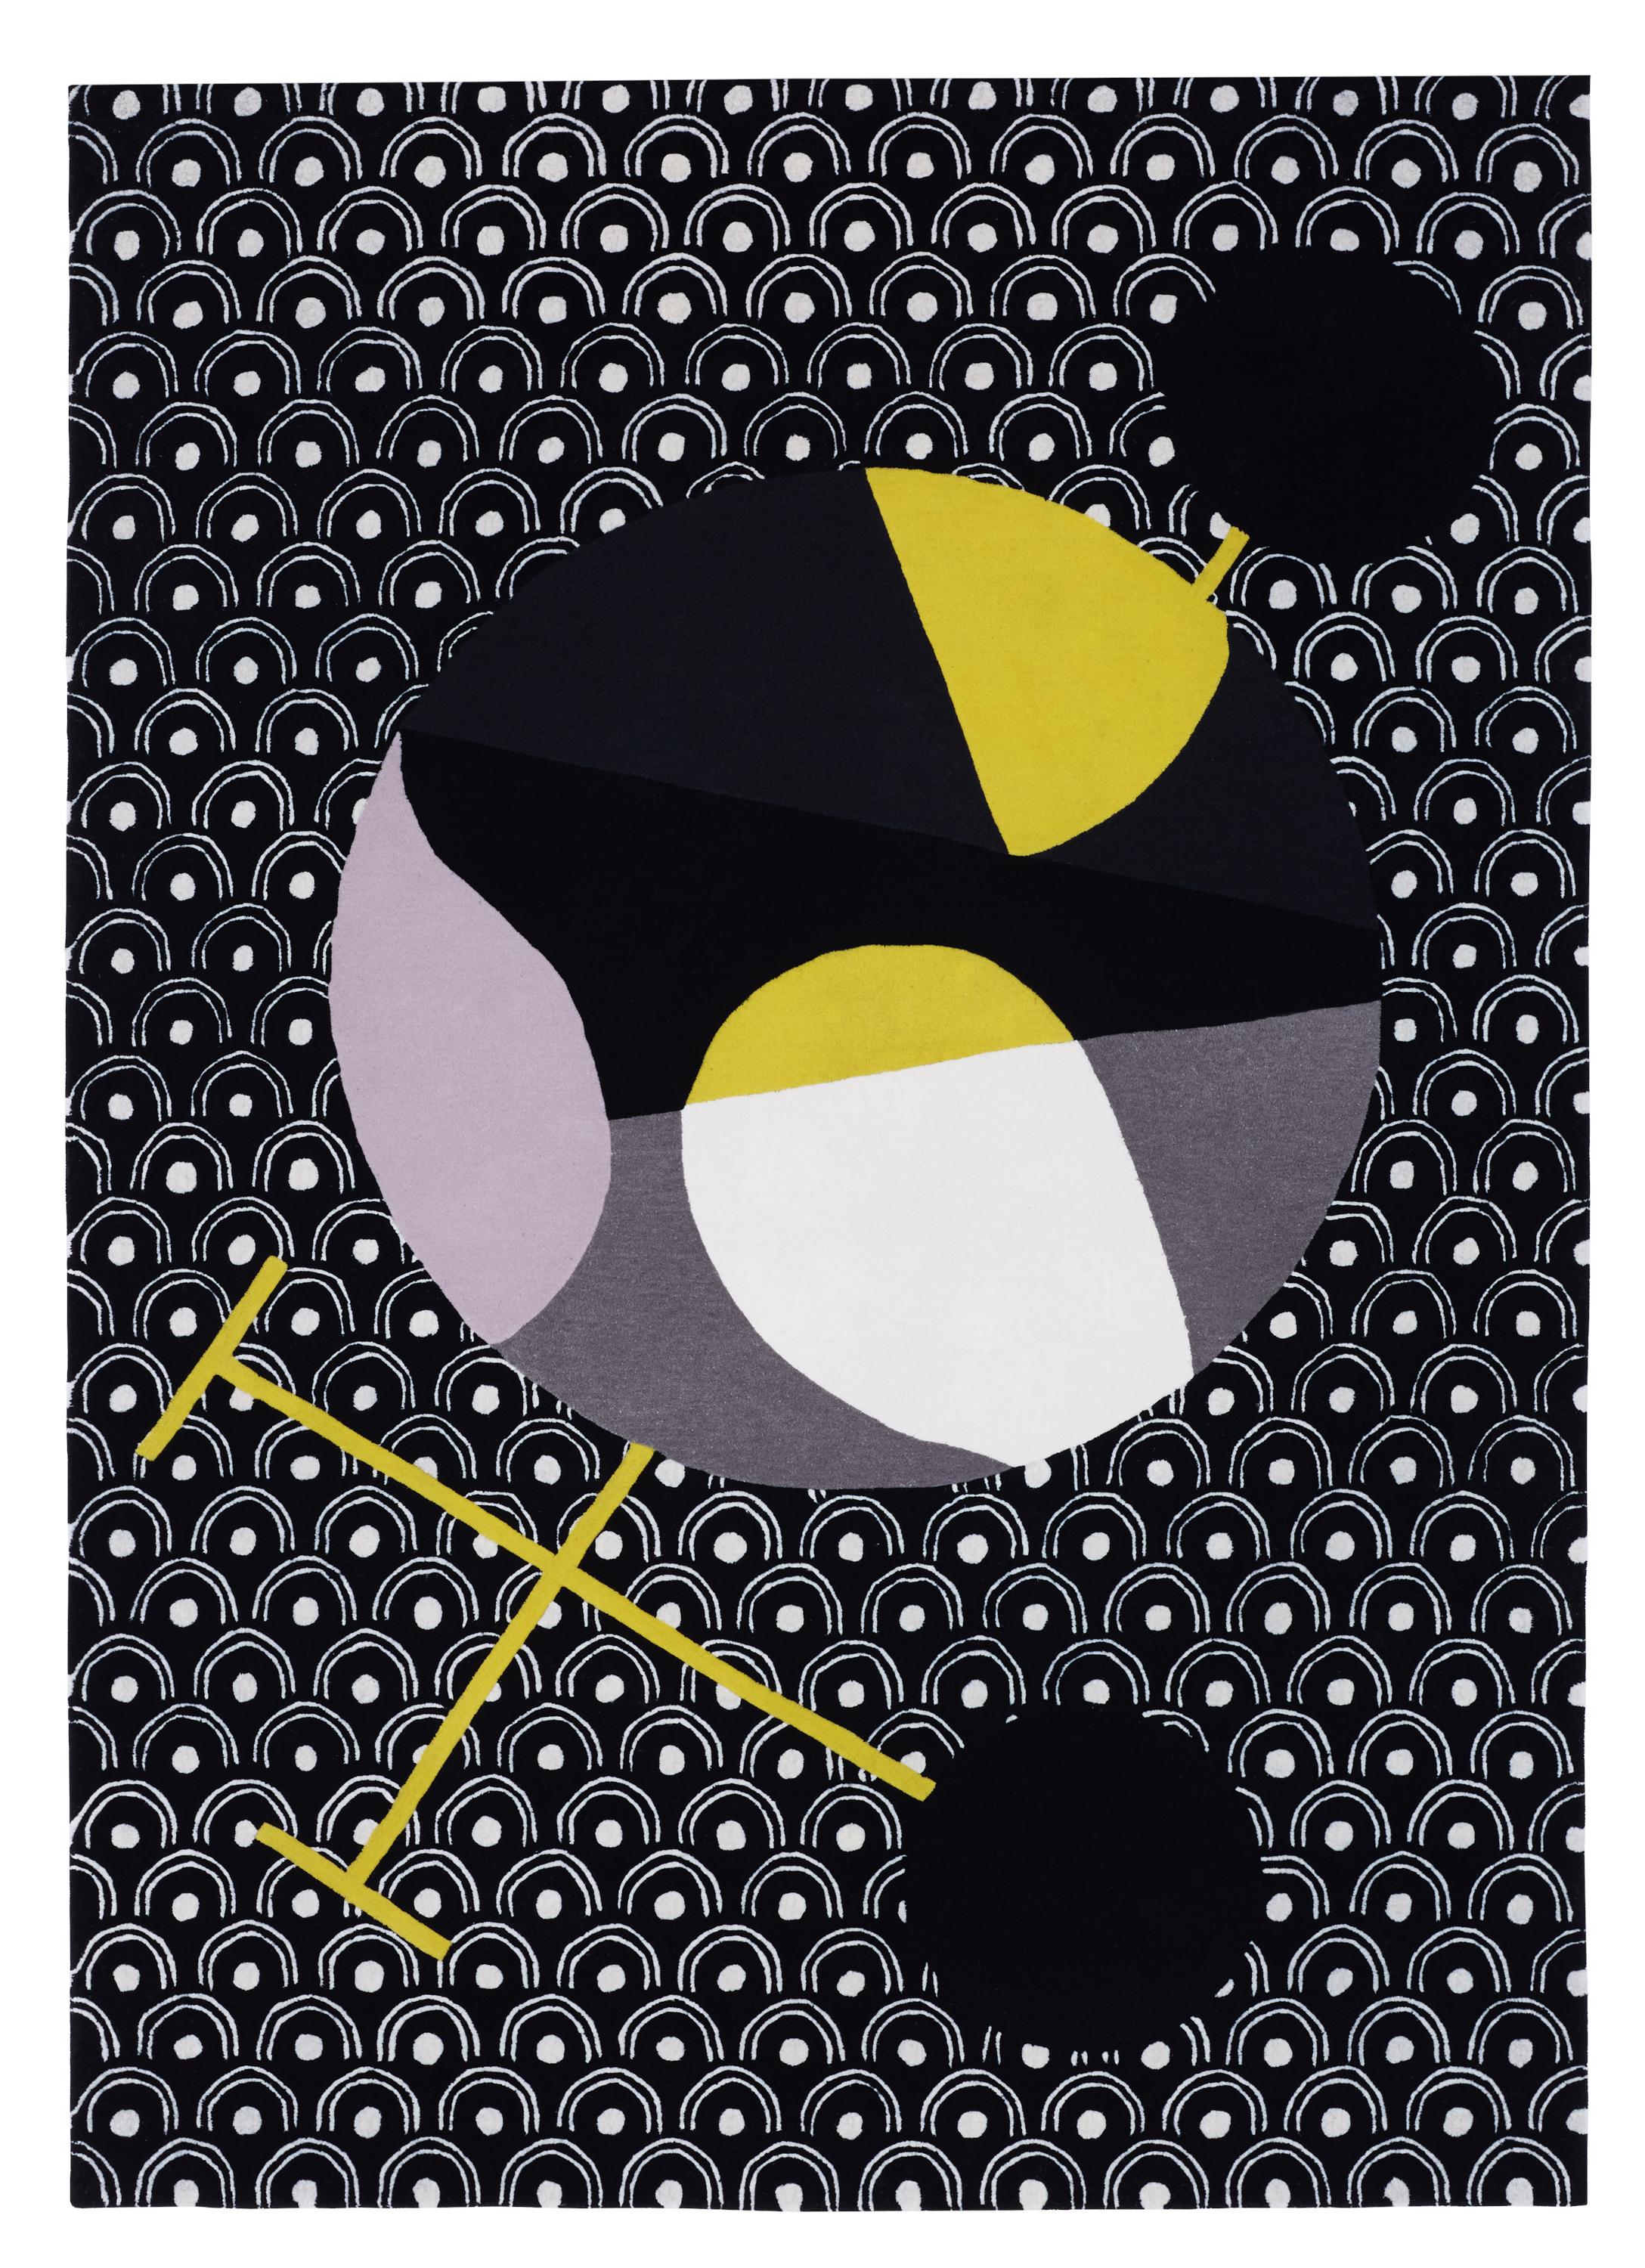 Tapis abstrait dadaïste contemporain inspiré par Sophie Taeuber Arp
Artistics : Sophie Taeuber Arp
Dimensions : L 170 x P 240 CM
Laine et soie de Nouvelle-Zélande

Japanese Abstractions est une collection de neuf pièces, toutes conçues autour du